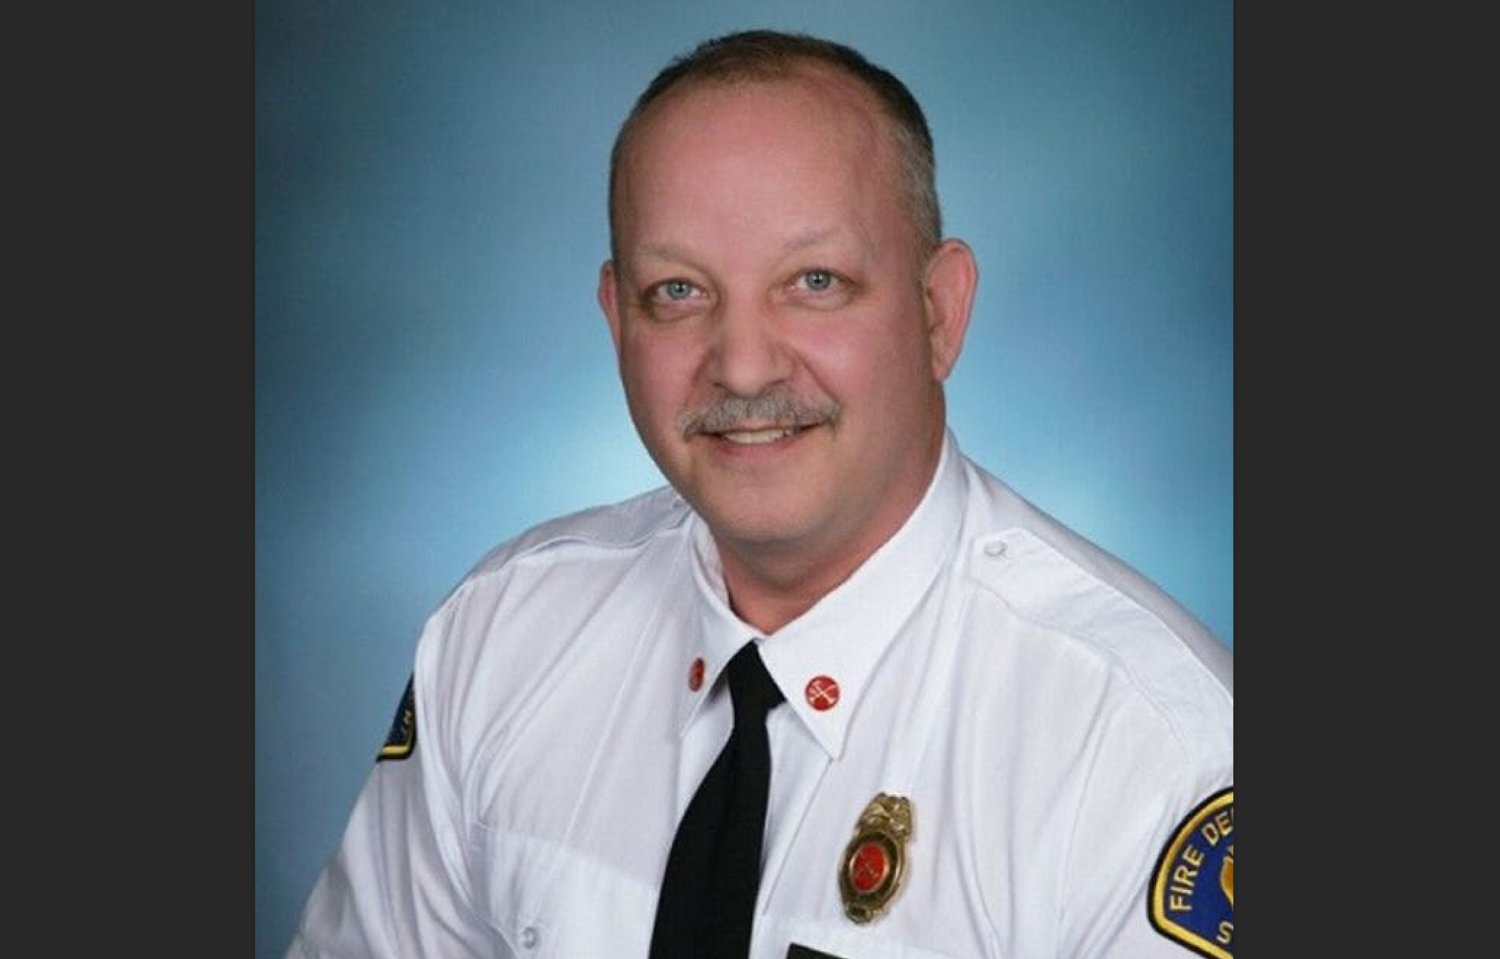 Deputy Chief Jay Schreckengost